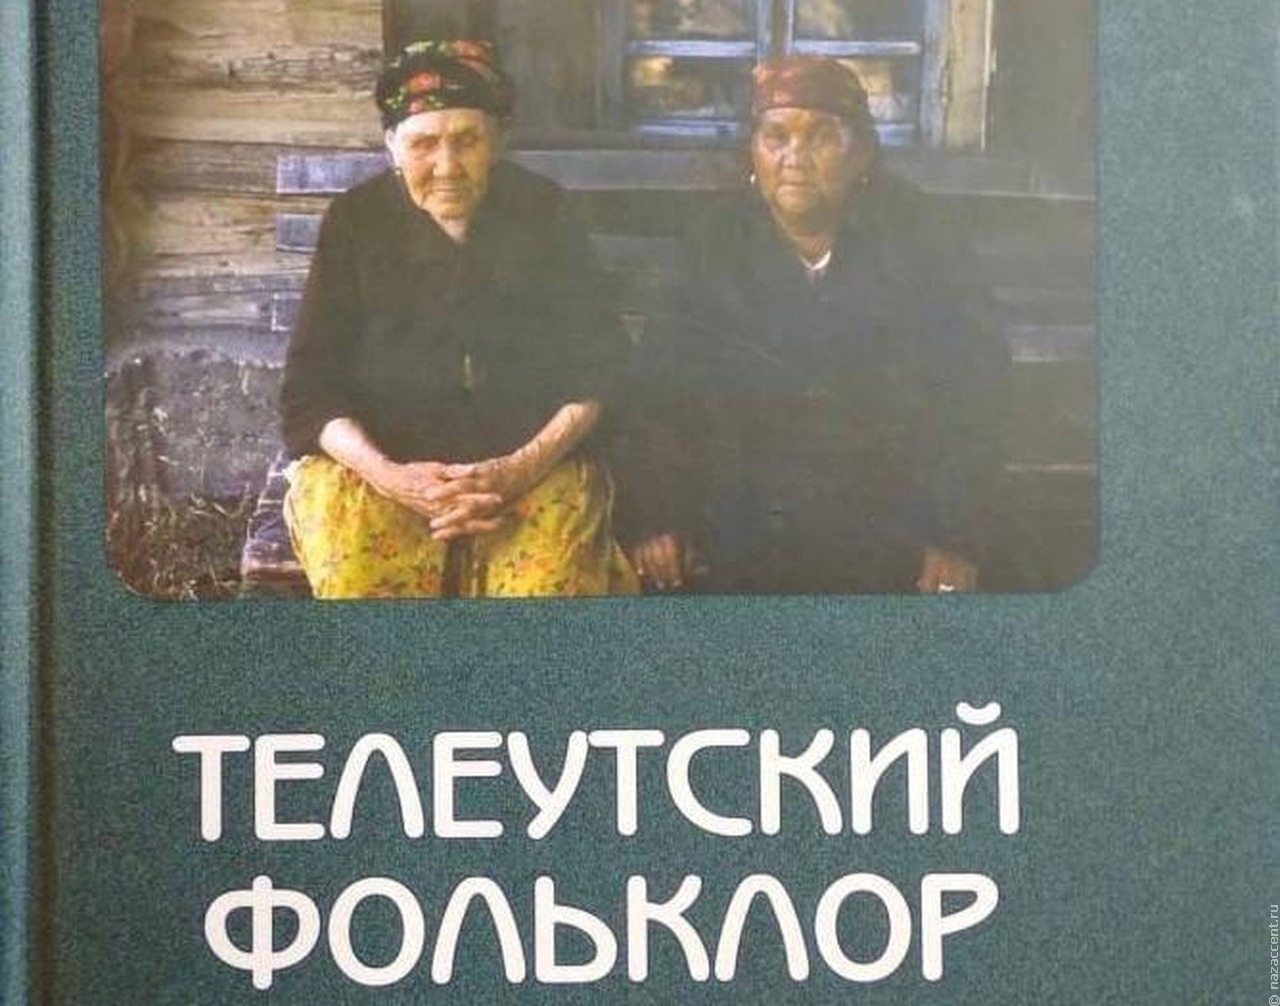 В Кузбассе выпустили книгу о фольклоре телеутов